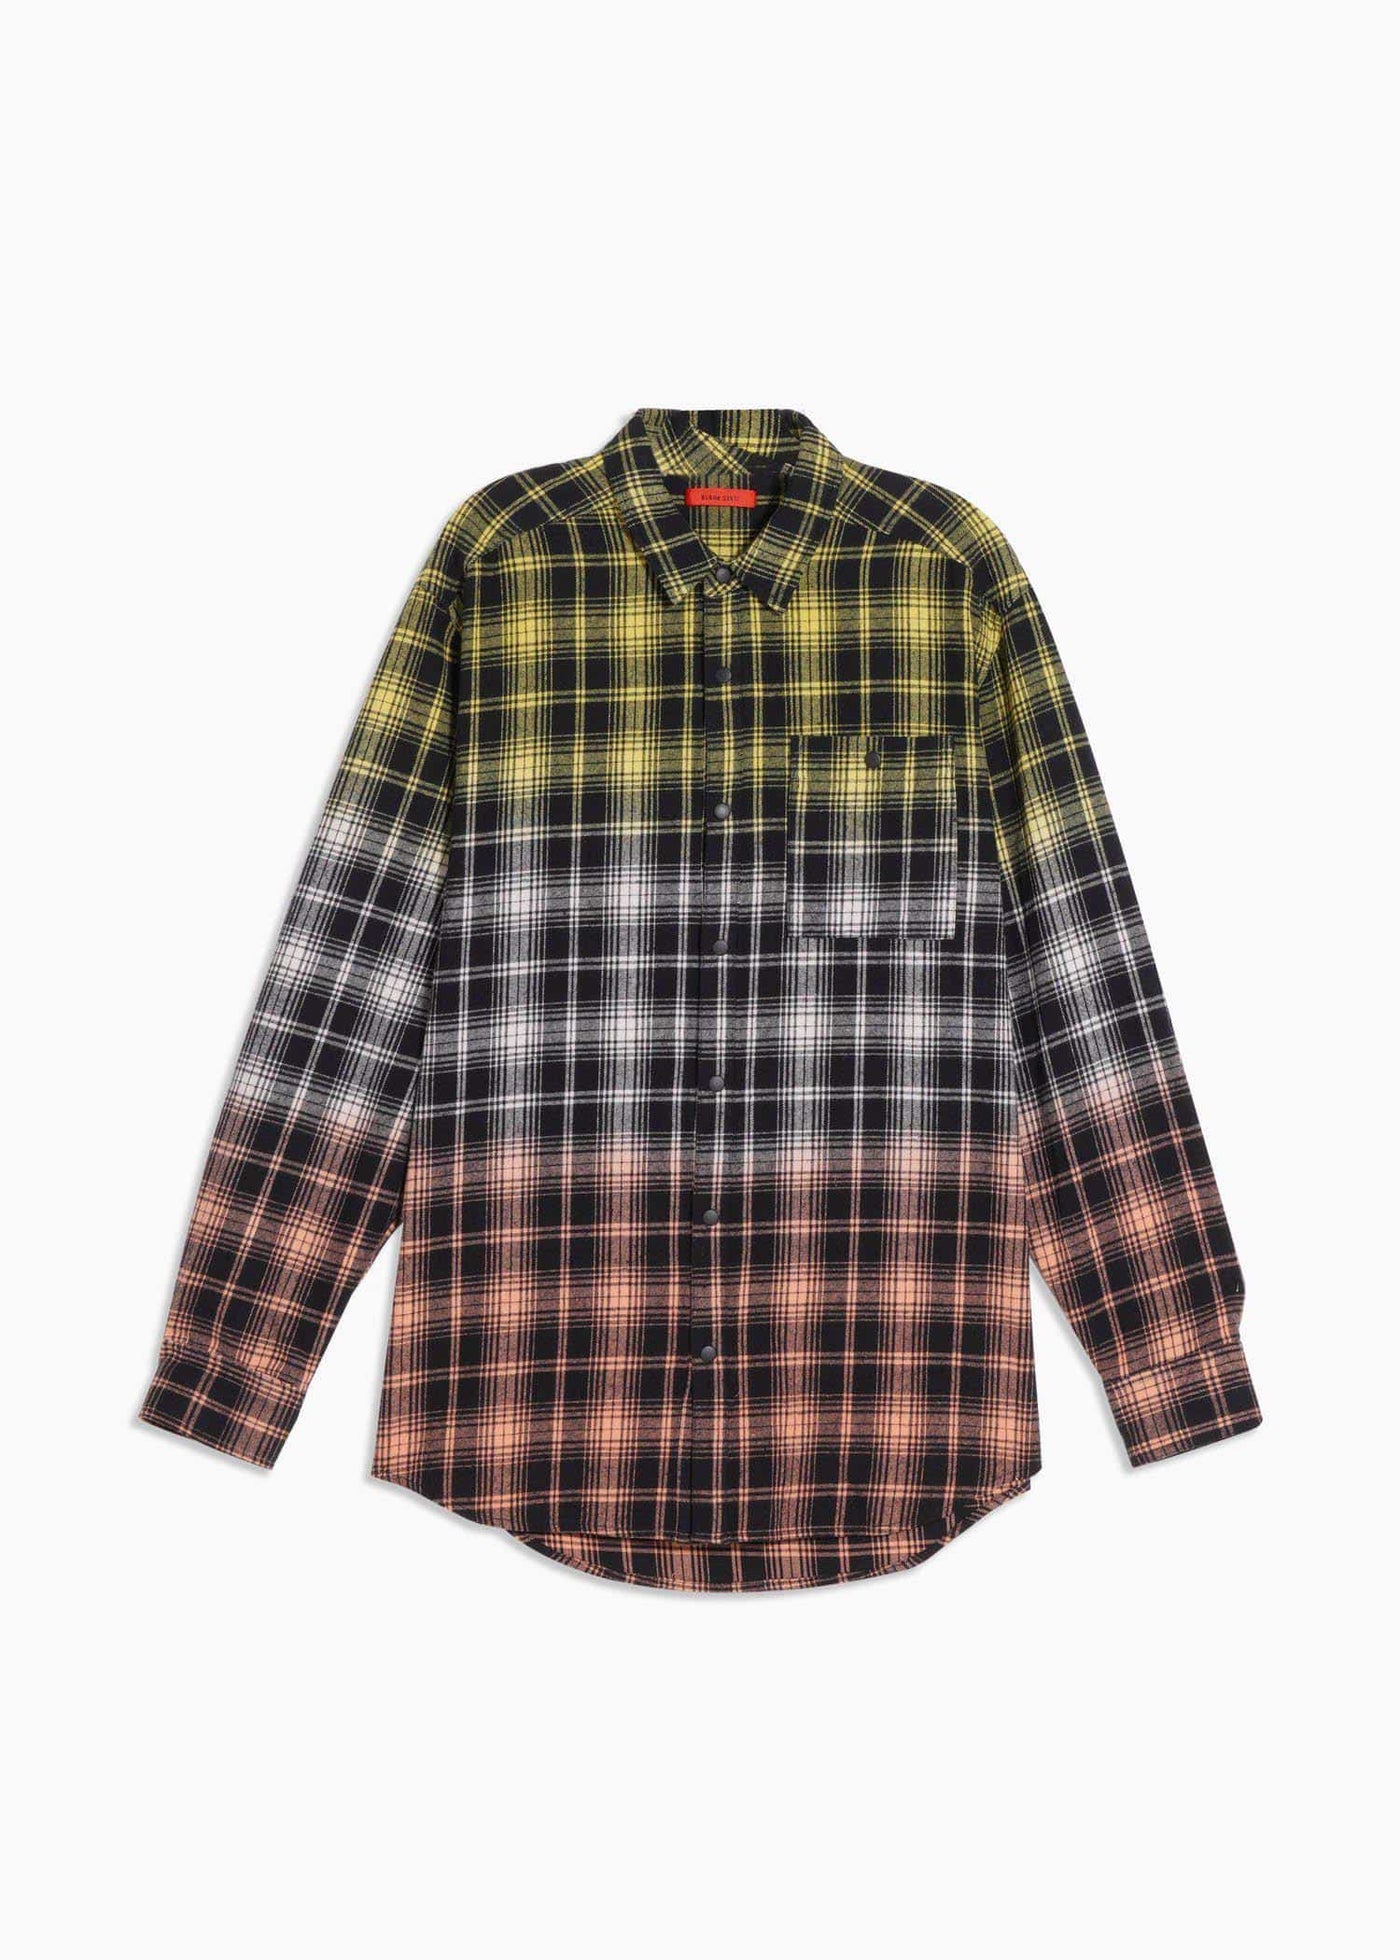 Konus Men's Double Dip Dyed Flannel shirt by Shop at Konus